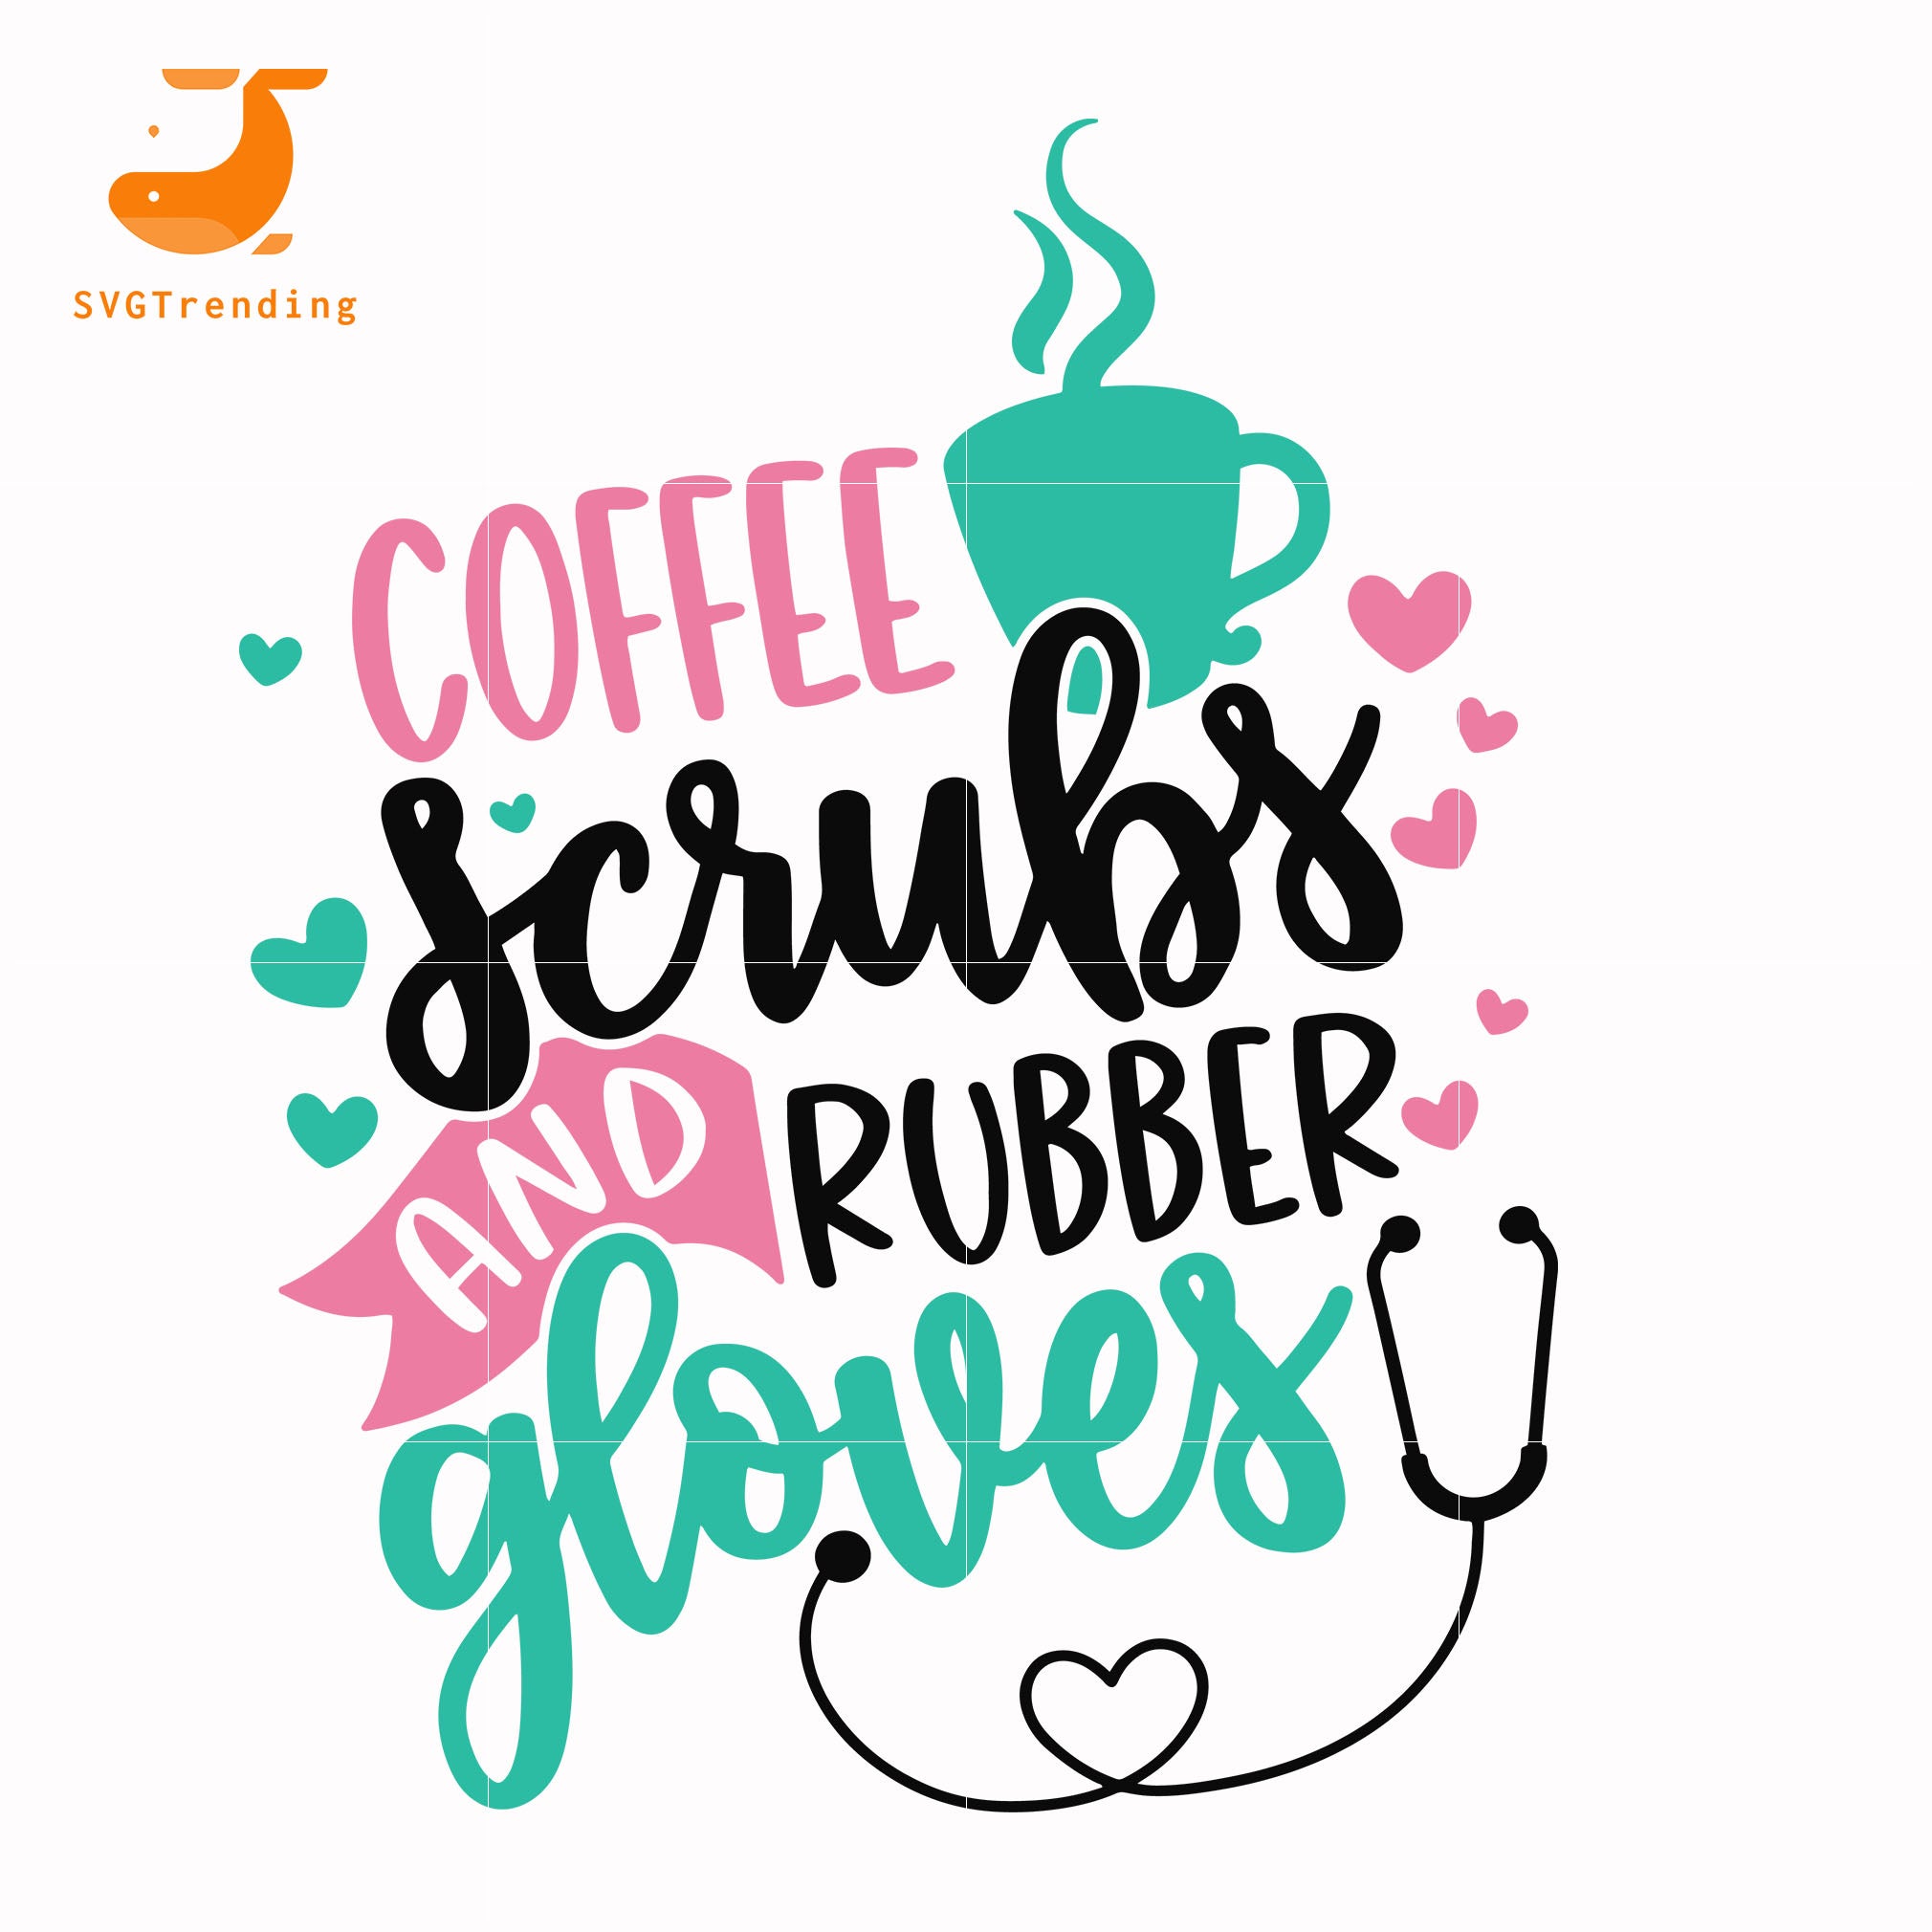 Download Coffee Scrubs Rubber Gloves Svg Easter Svg Bunny Svg Svg Dxf Eps Svgtrending